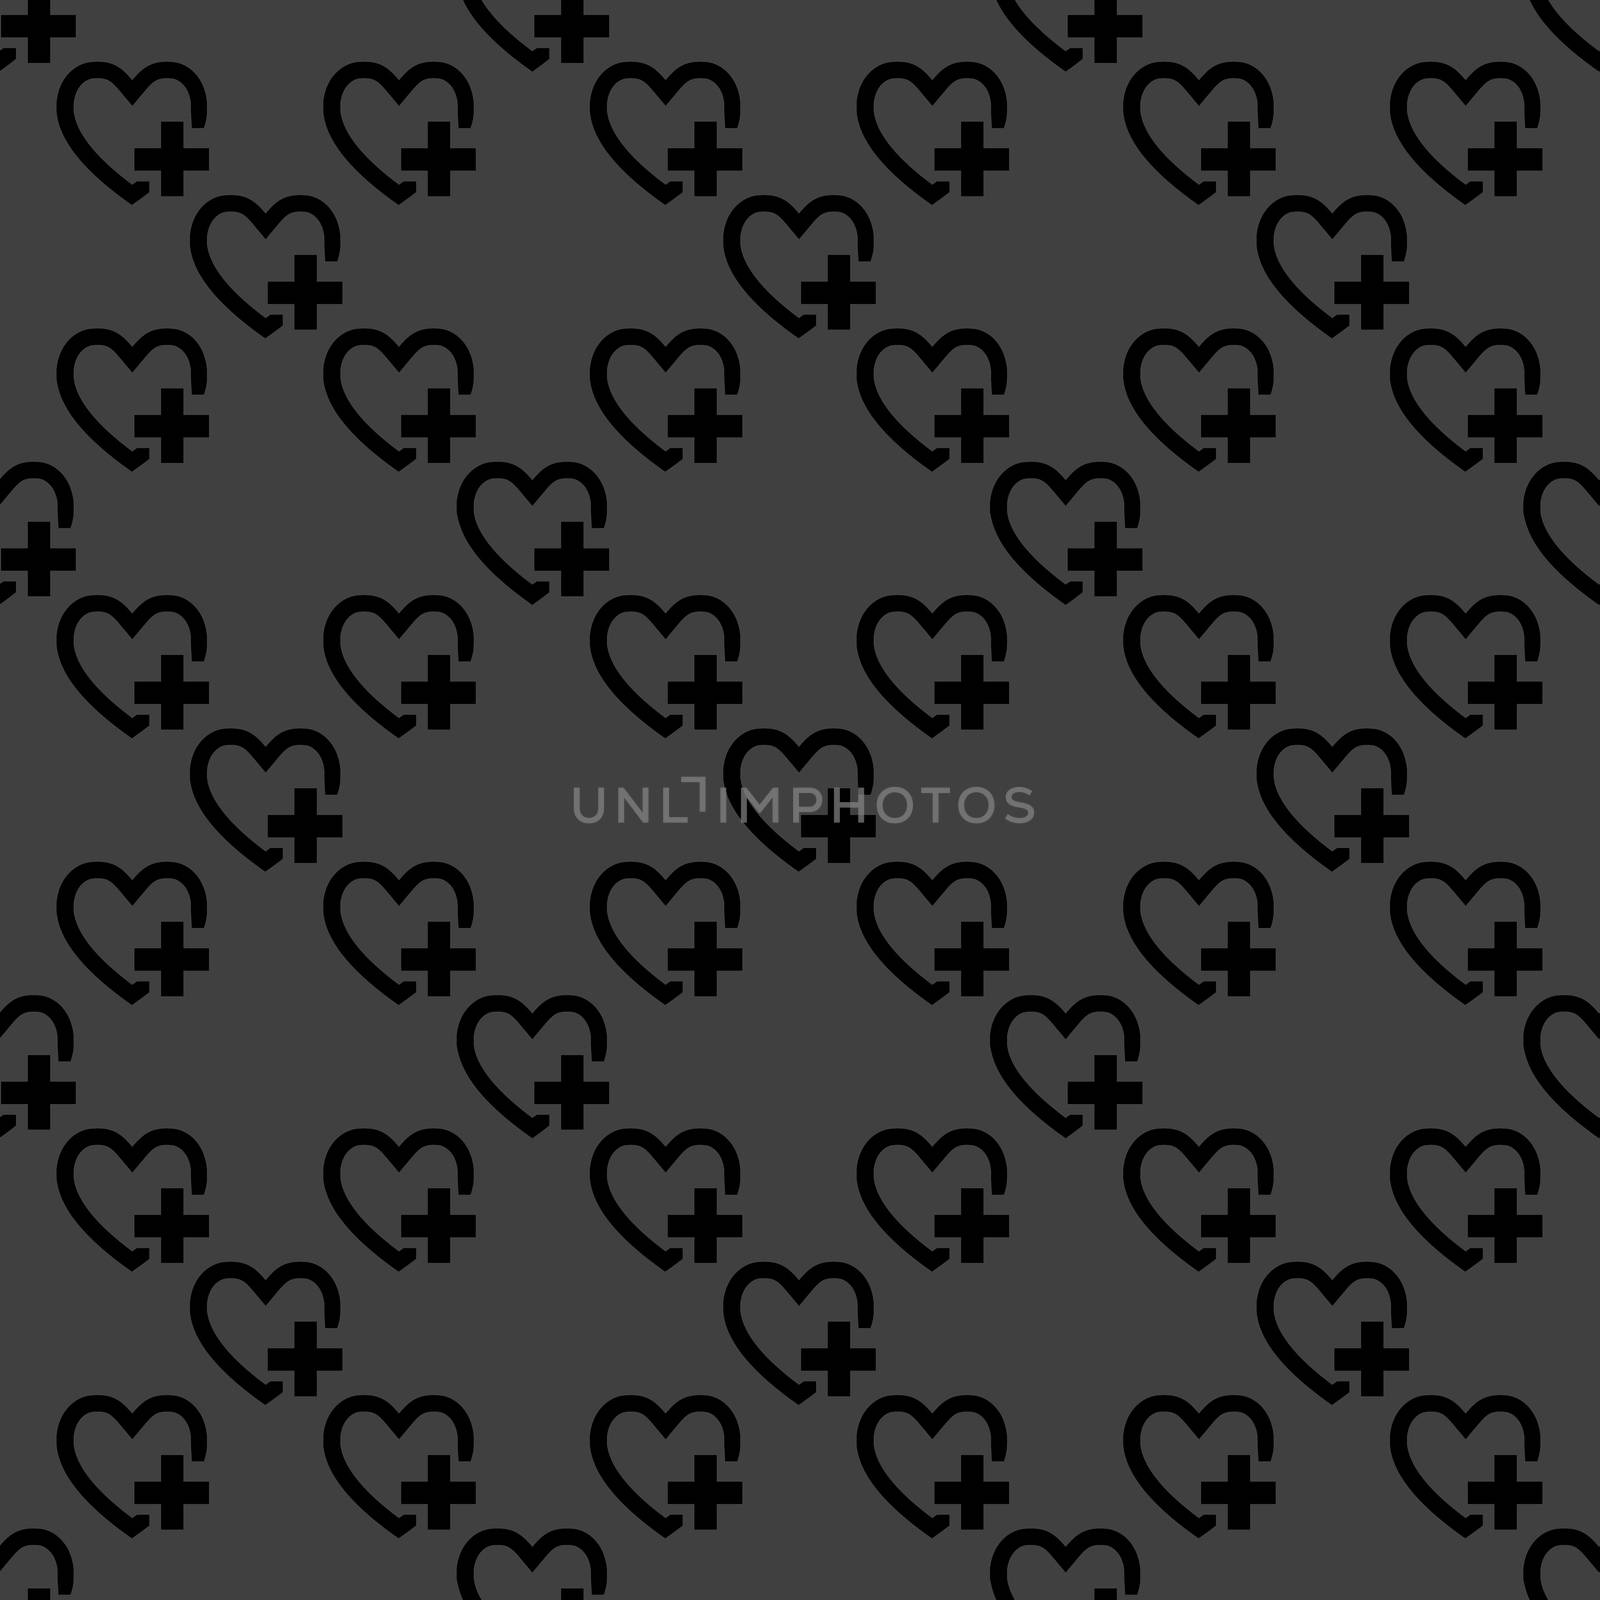 Heart web icon. flat design. Seamless pattern. by serhii_lohvyniuk